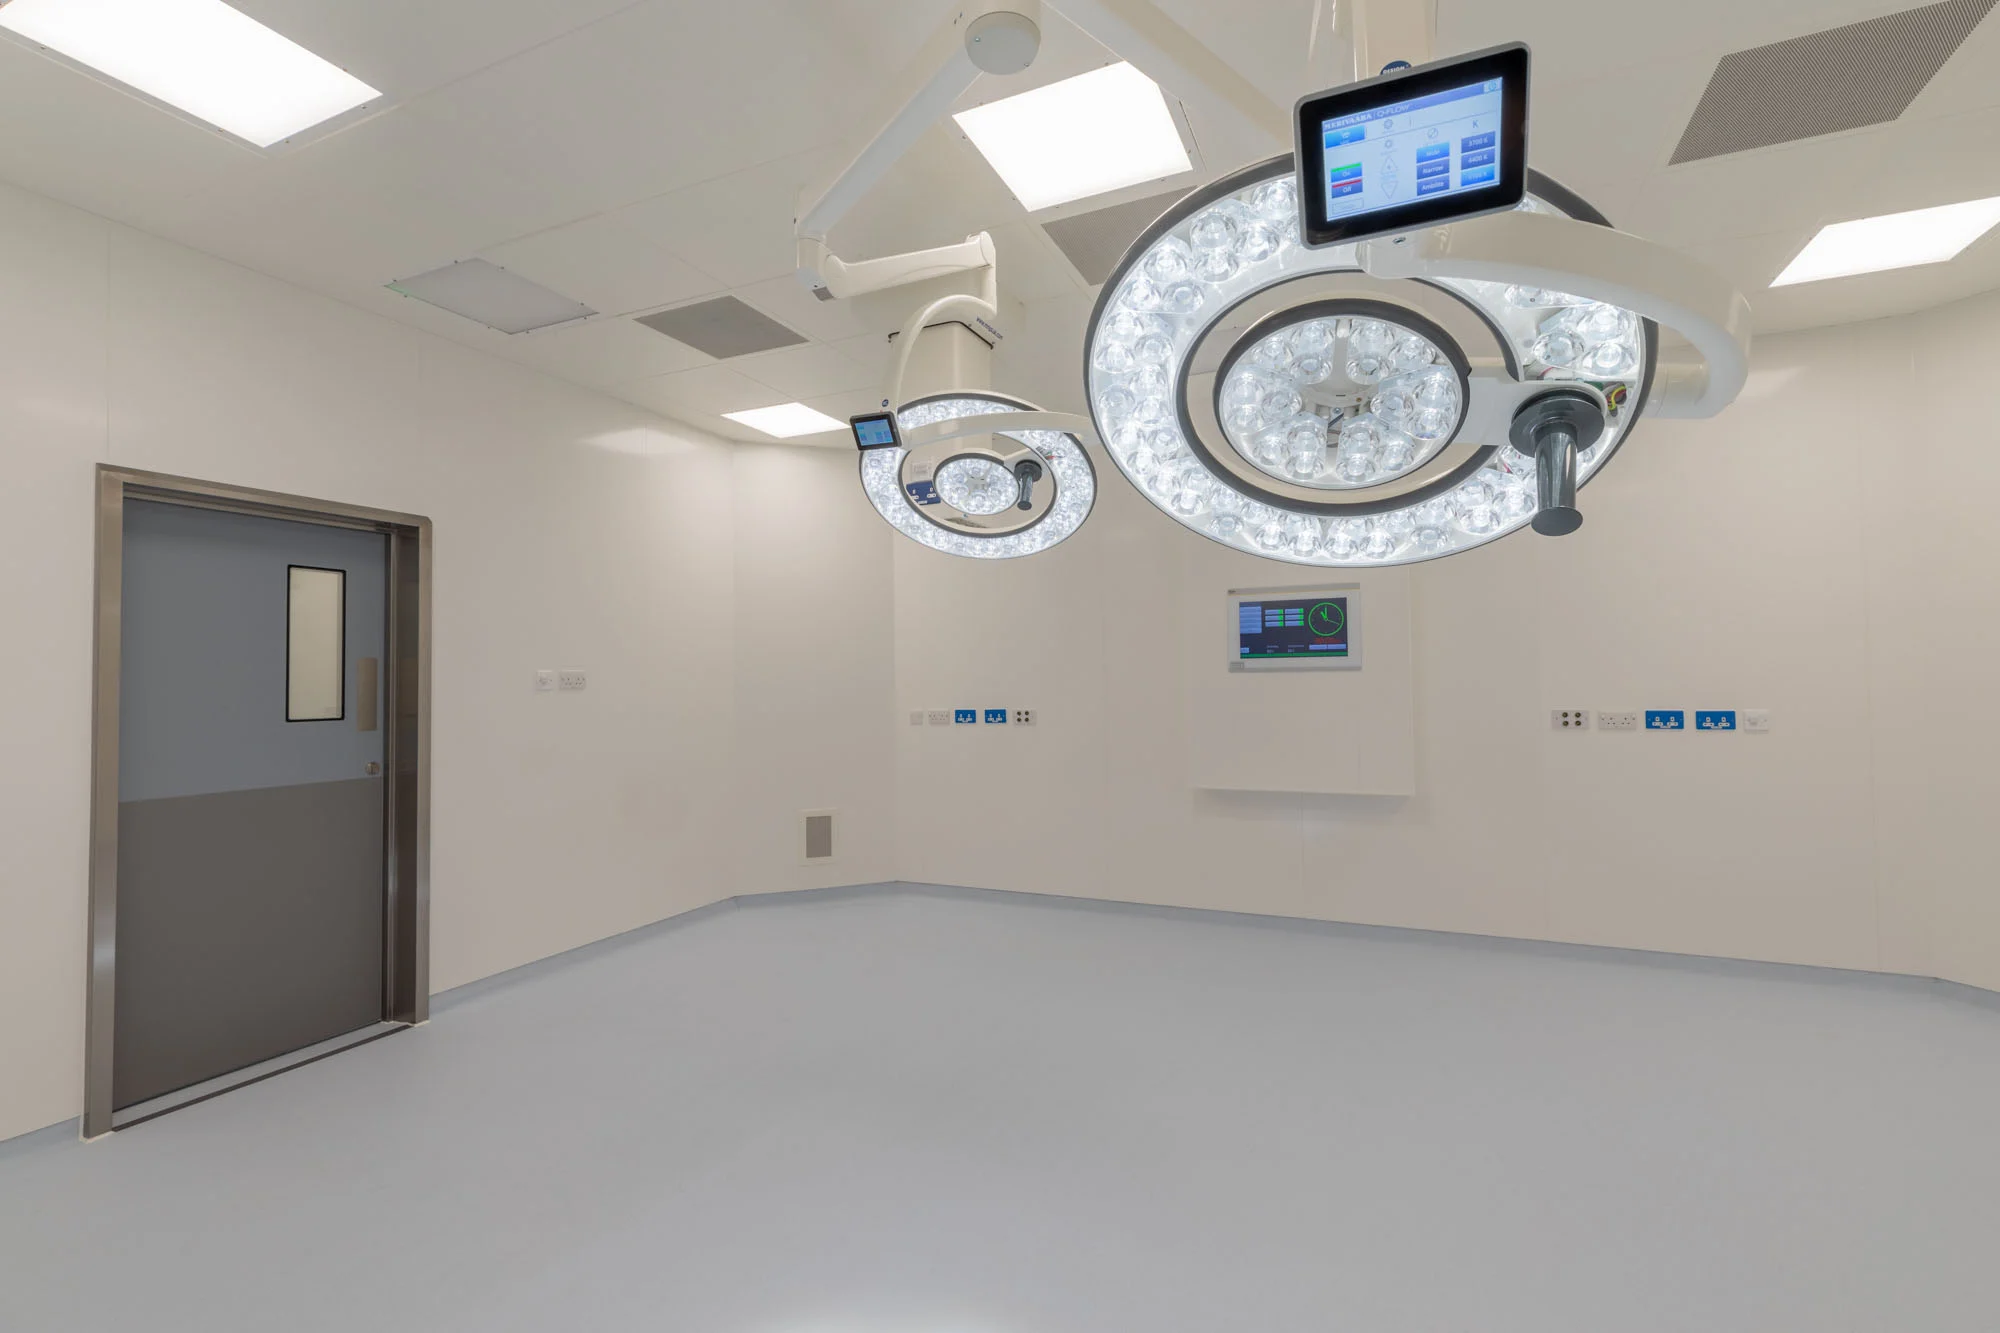 ModuleCo Endoscopy Unit Operating Theatre Image